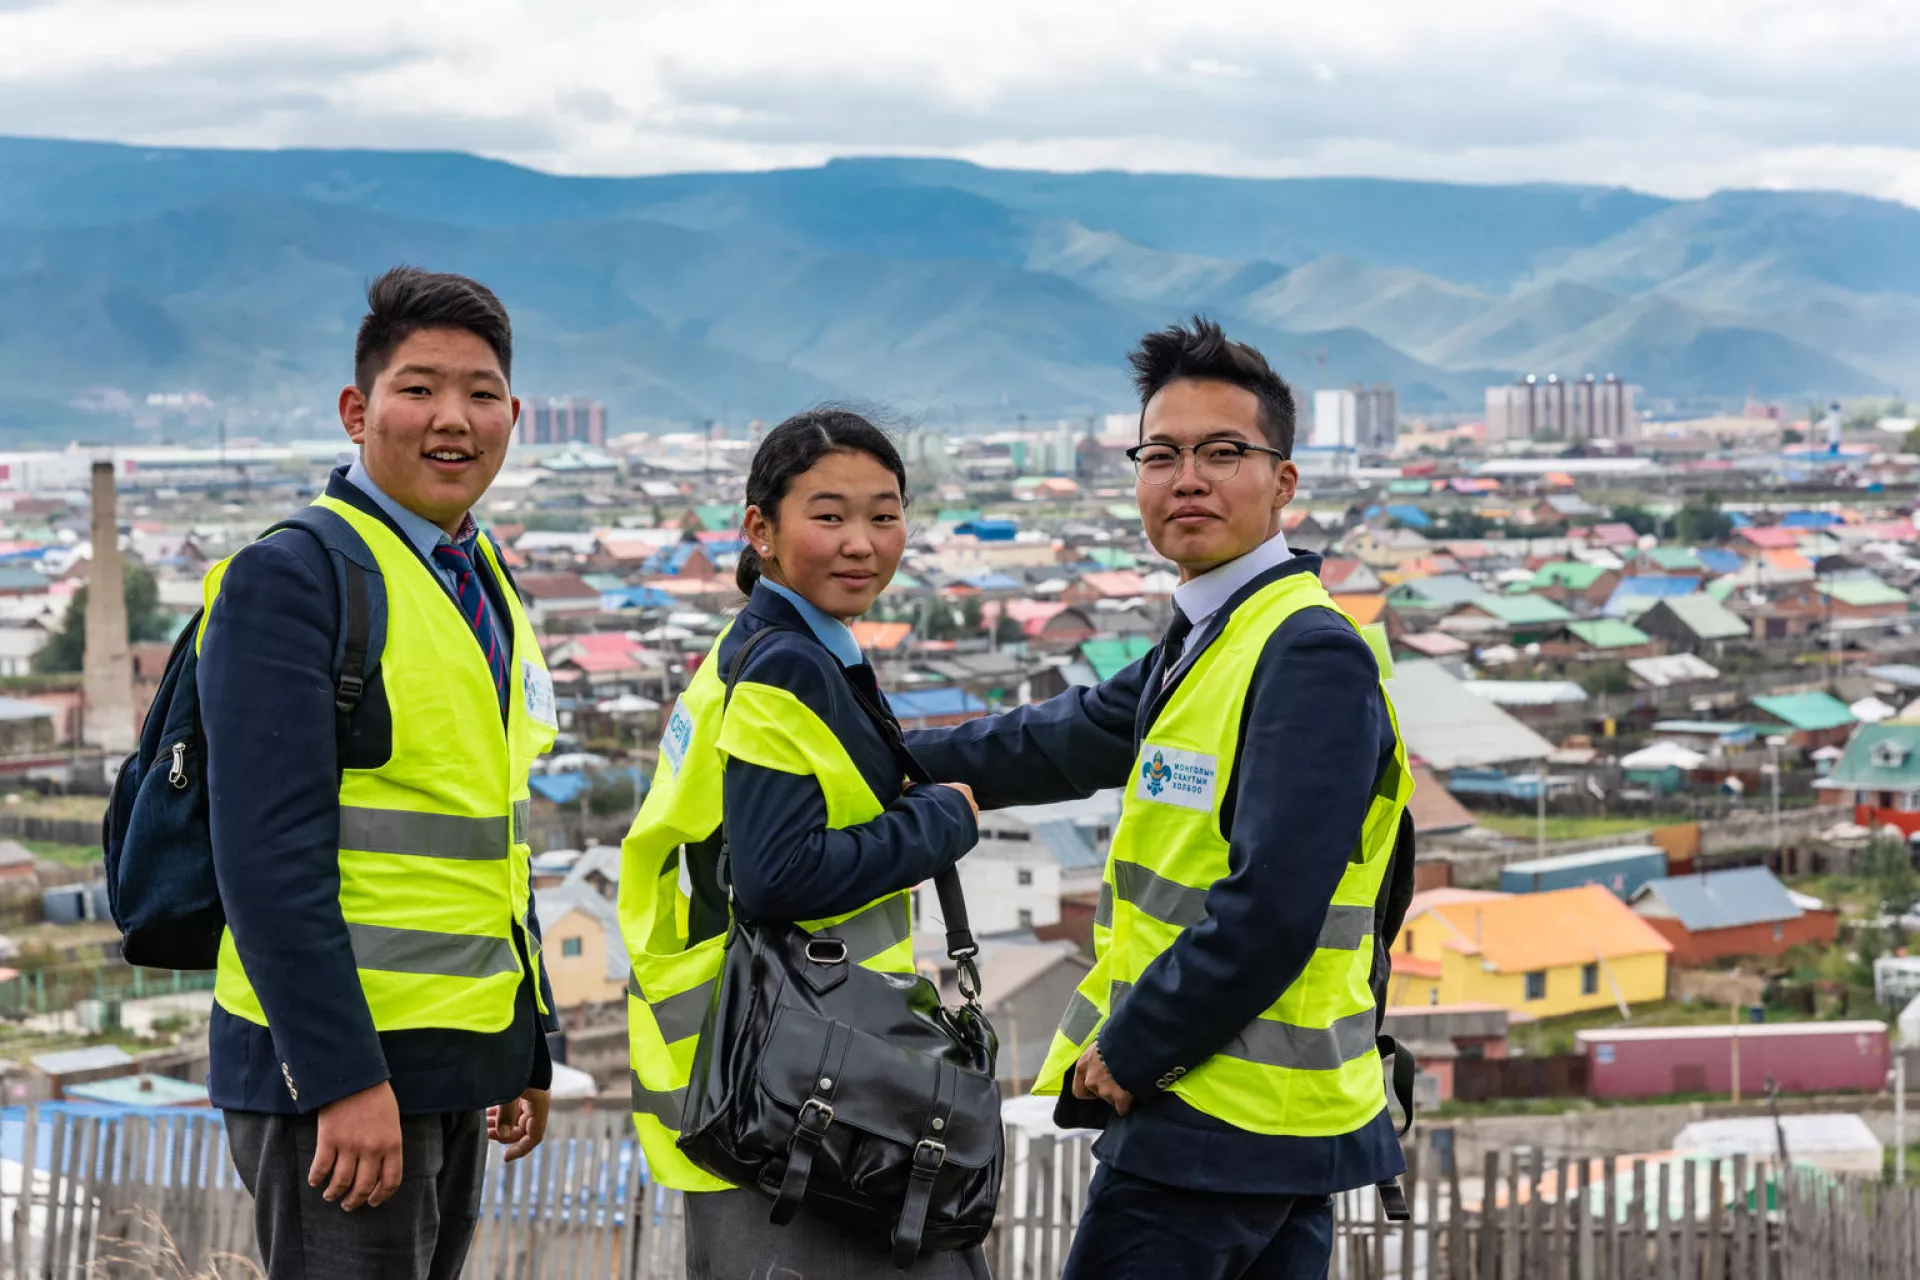  蒙古乌兰巴托的青少年收集空气污染数据，他们配备了联合国儿童基金会提供的便携式监测仪，在社区中穿行，测量空气质量。